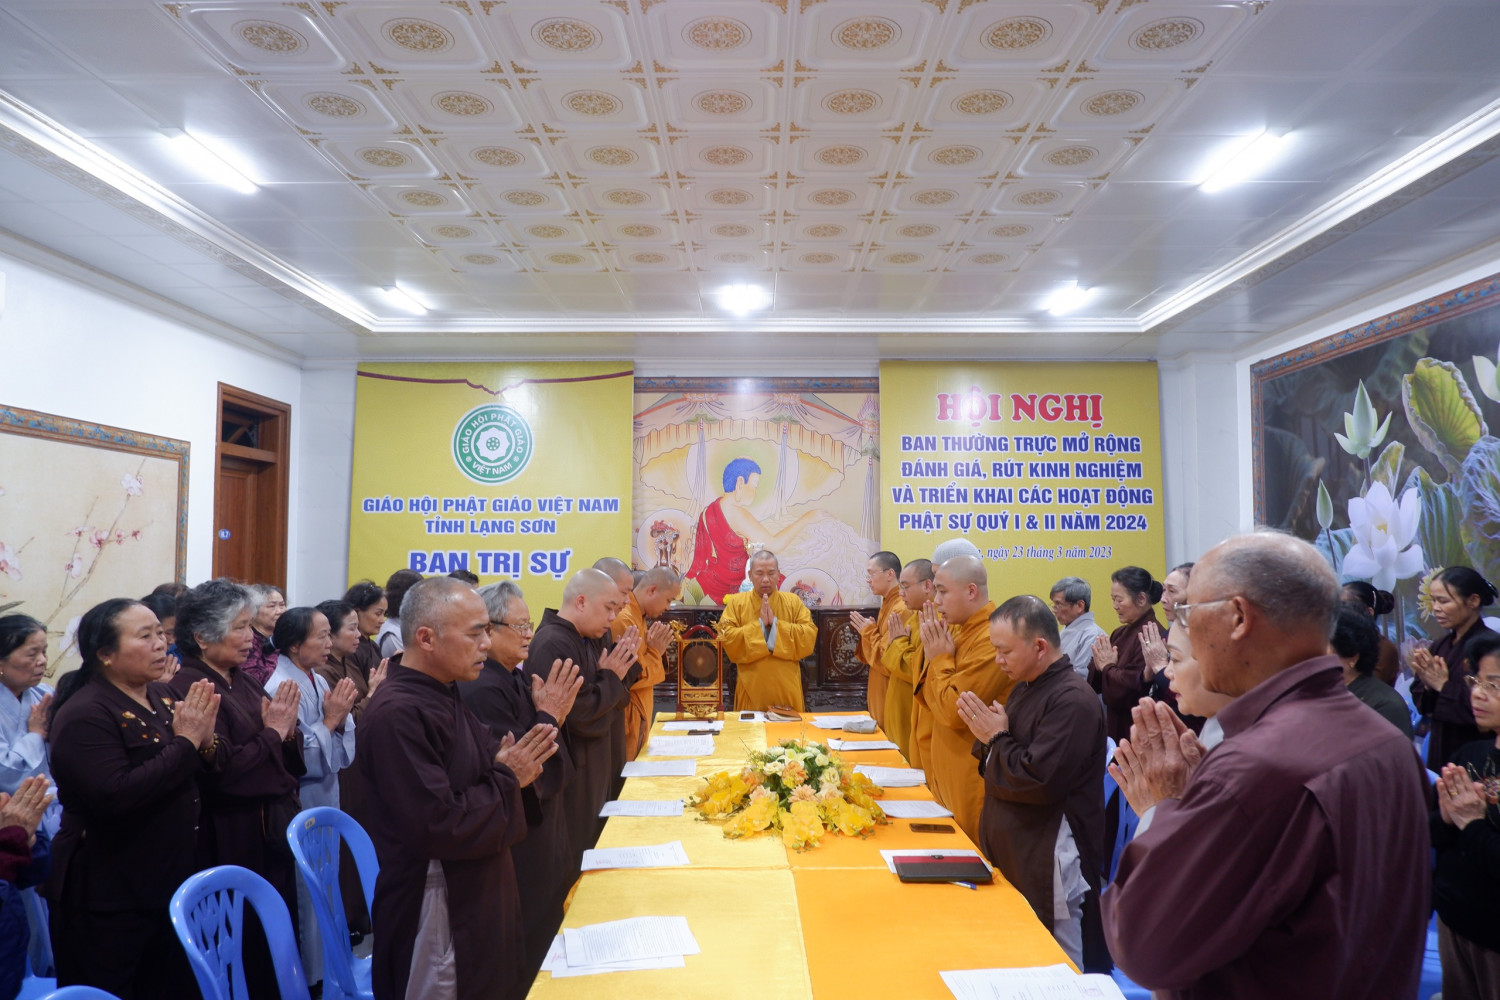 Phật giáo tỉnh tổ chức Hội nghị mở rộng đánh giá, rút kinh nghiệm và triển khai các hoạt động Phật sự trong Quý I, Quý II năm 2024